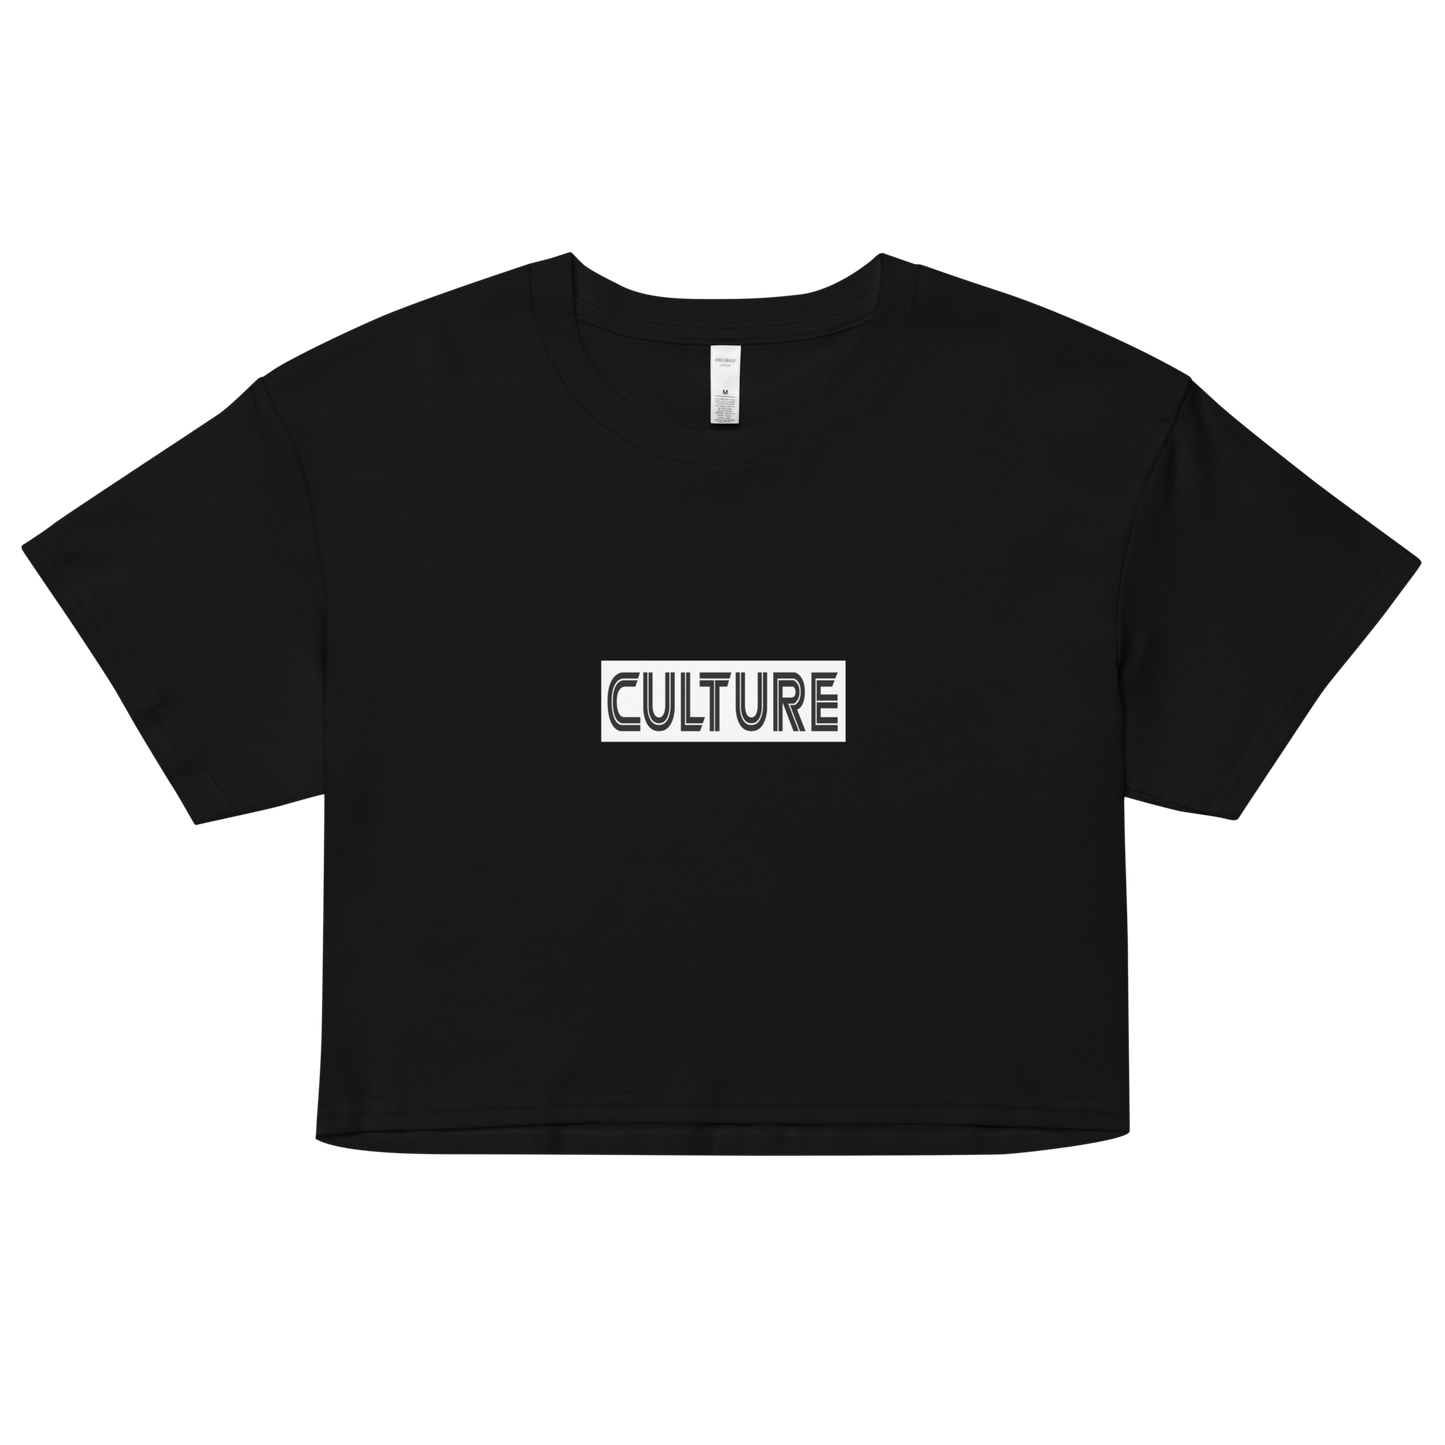 Culture Women’s crop top